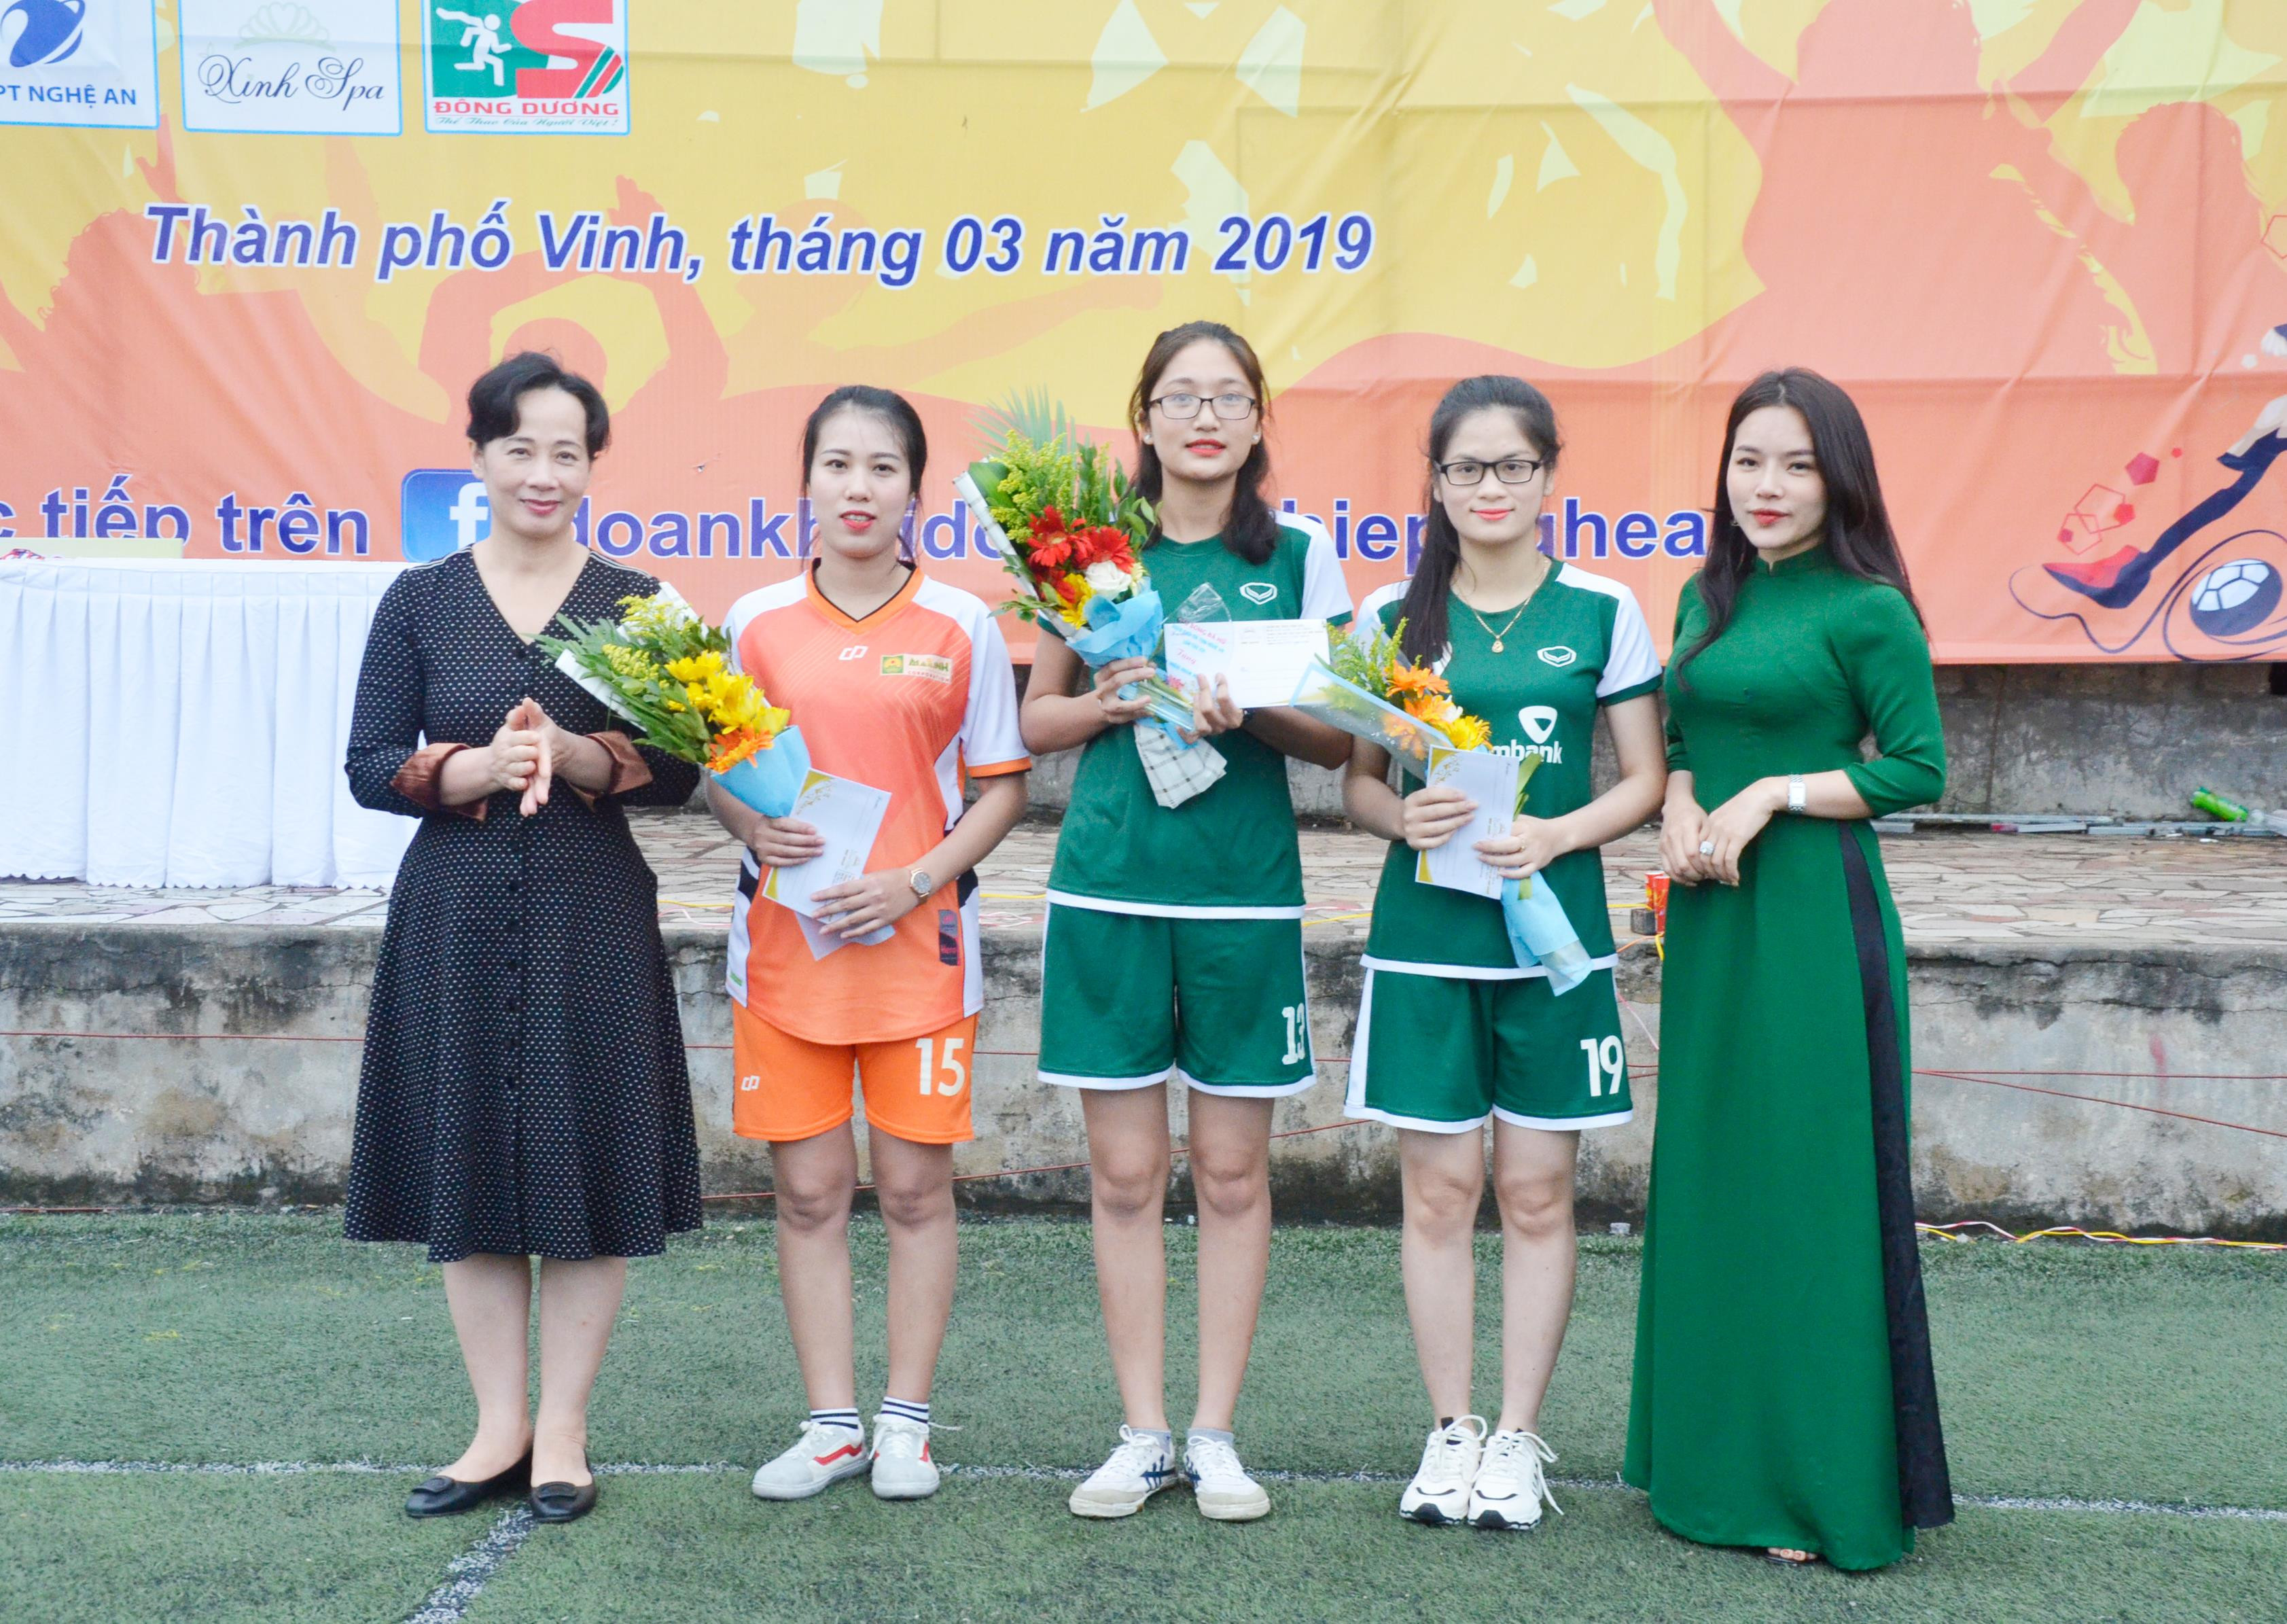 Hoa khôi giải bóng đá nữ năm 2019 thuộc về cầu thủ Lê Khánh Huyền (giữa) đội Ngân hàng Vietcombank Nghệ An. Ảnh: Thanh Lê